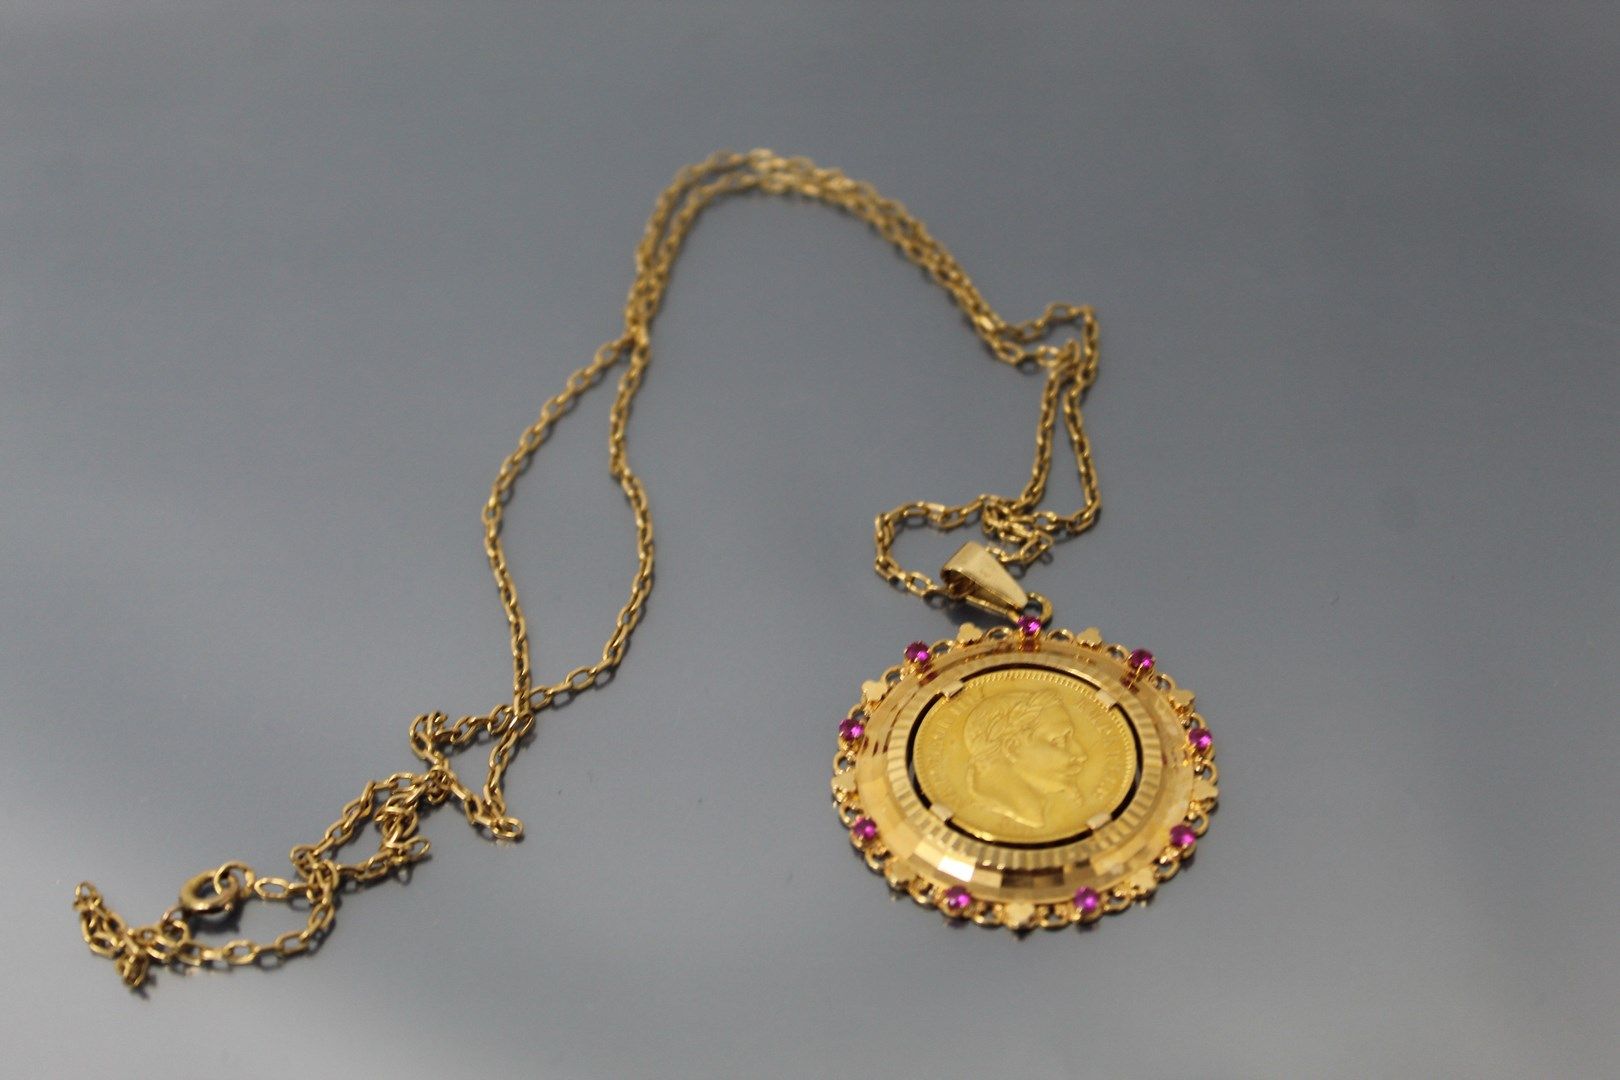 Null 20法郎拿破仑三世头顶桂冠的金币。(1864 A)

18K(750)黄金吊坠，合成红宝石。搭配其18K（750）黄金链。

毛重：18.09克。